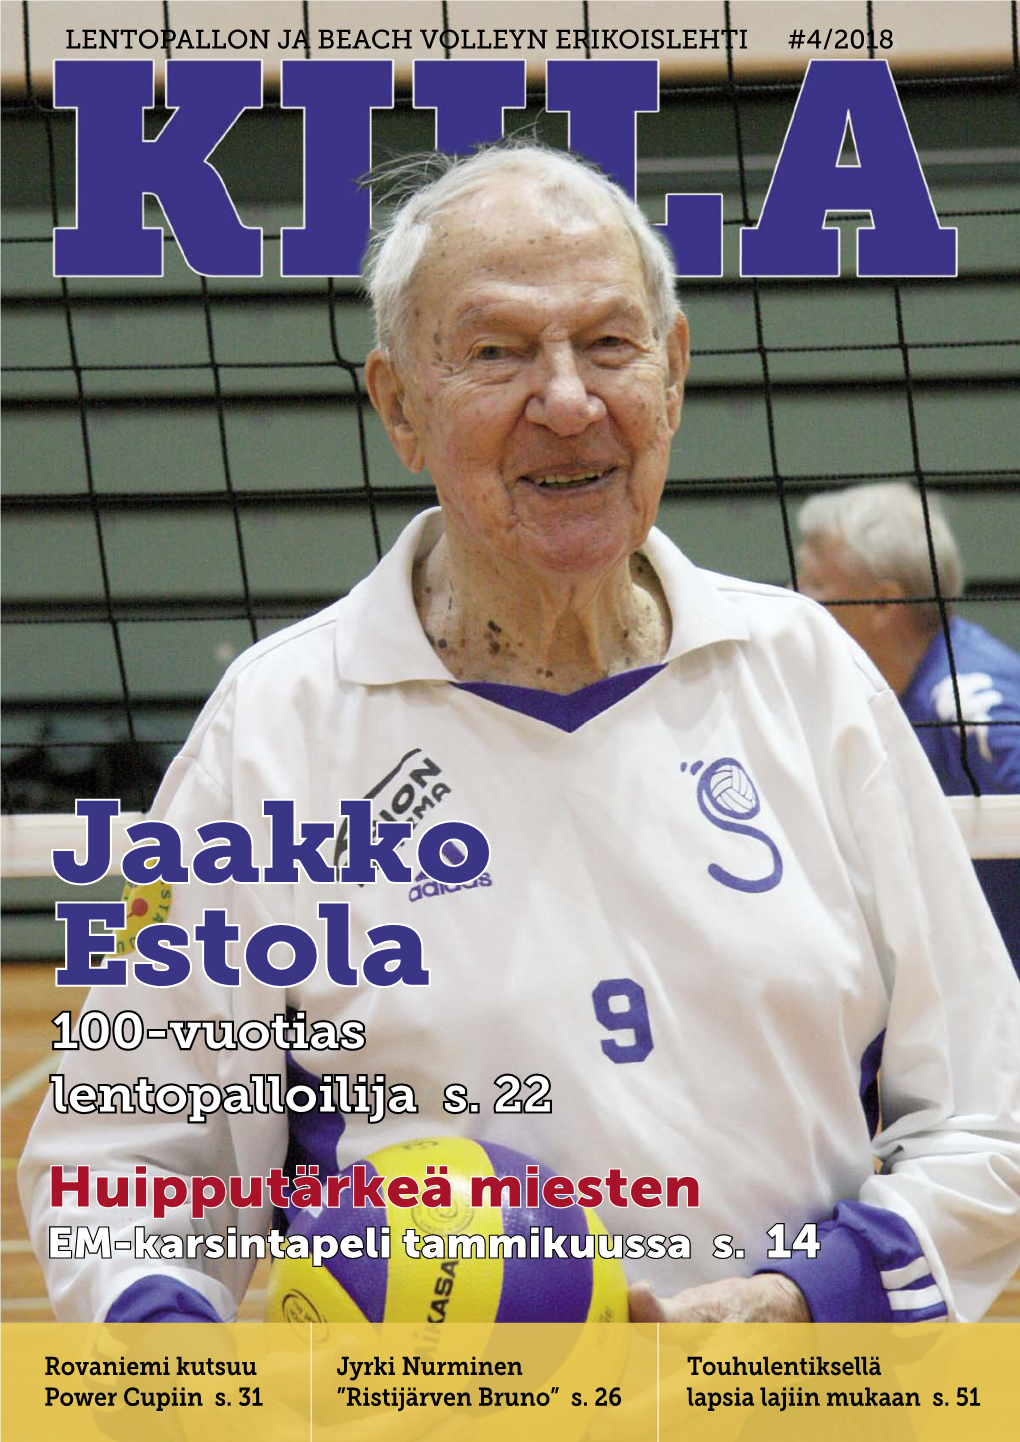 Jaakko Estola 100-Vuotias Lentopalloilija S